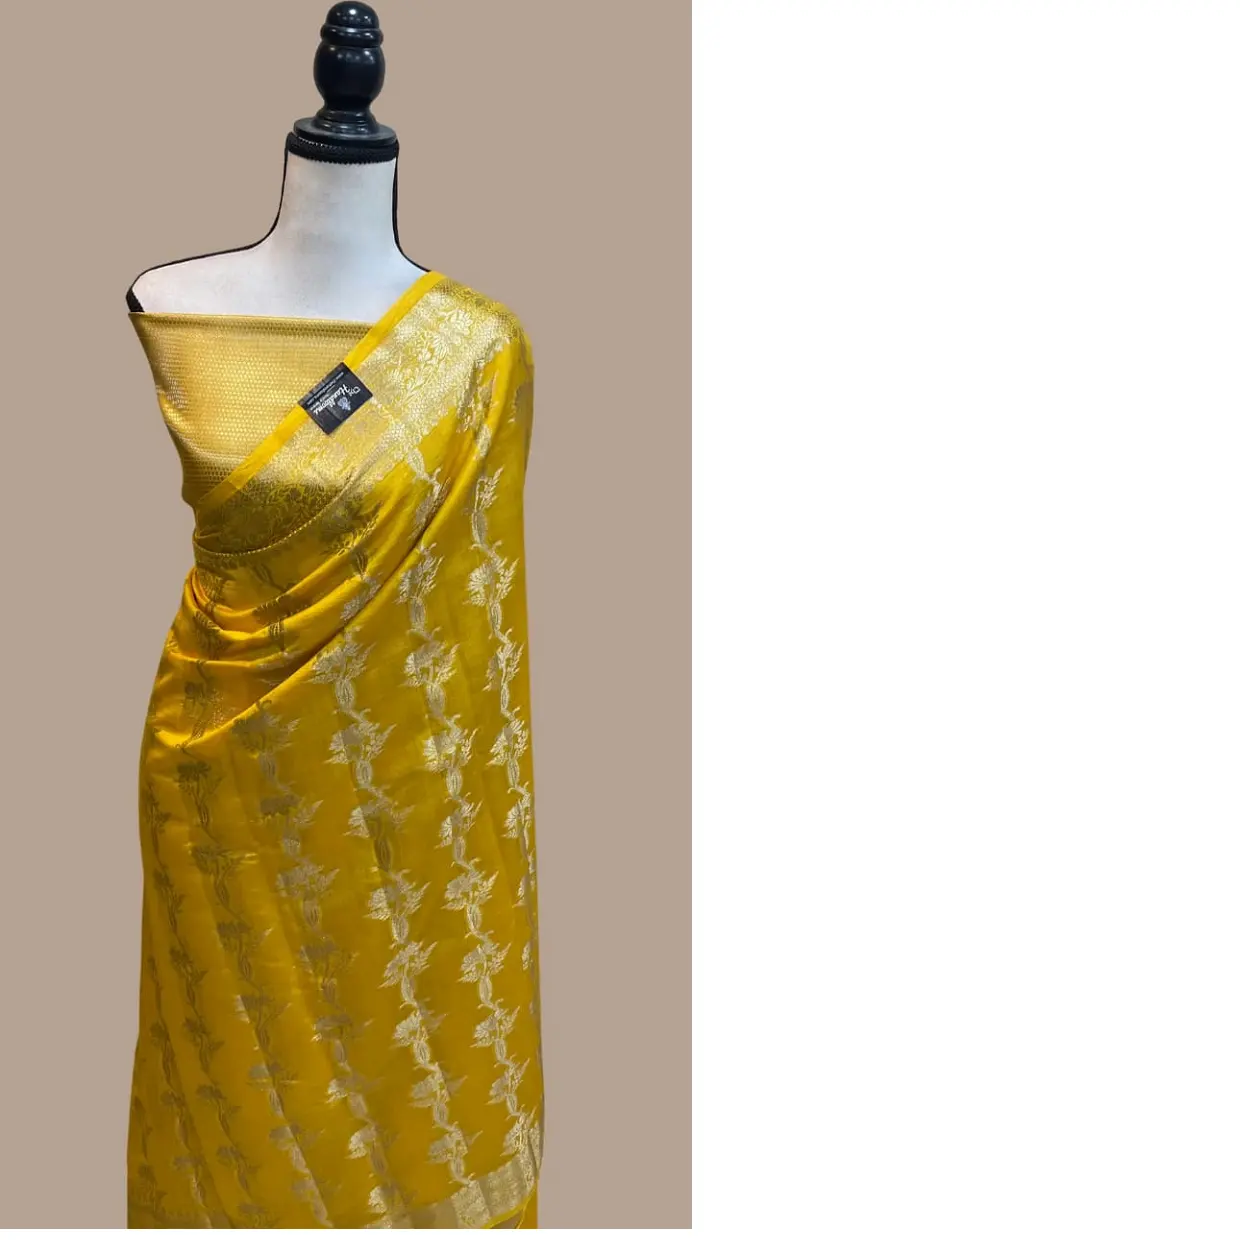 Tela de seda brocada hecha a medida, saris y material de vestido, ideal para hacer vestidos y adecuado para usar como saris